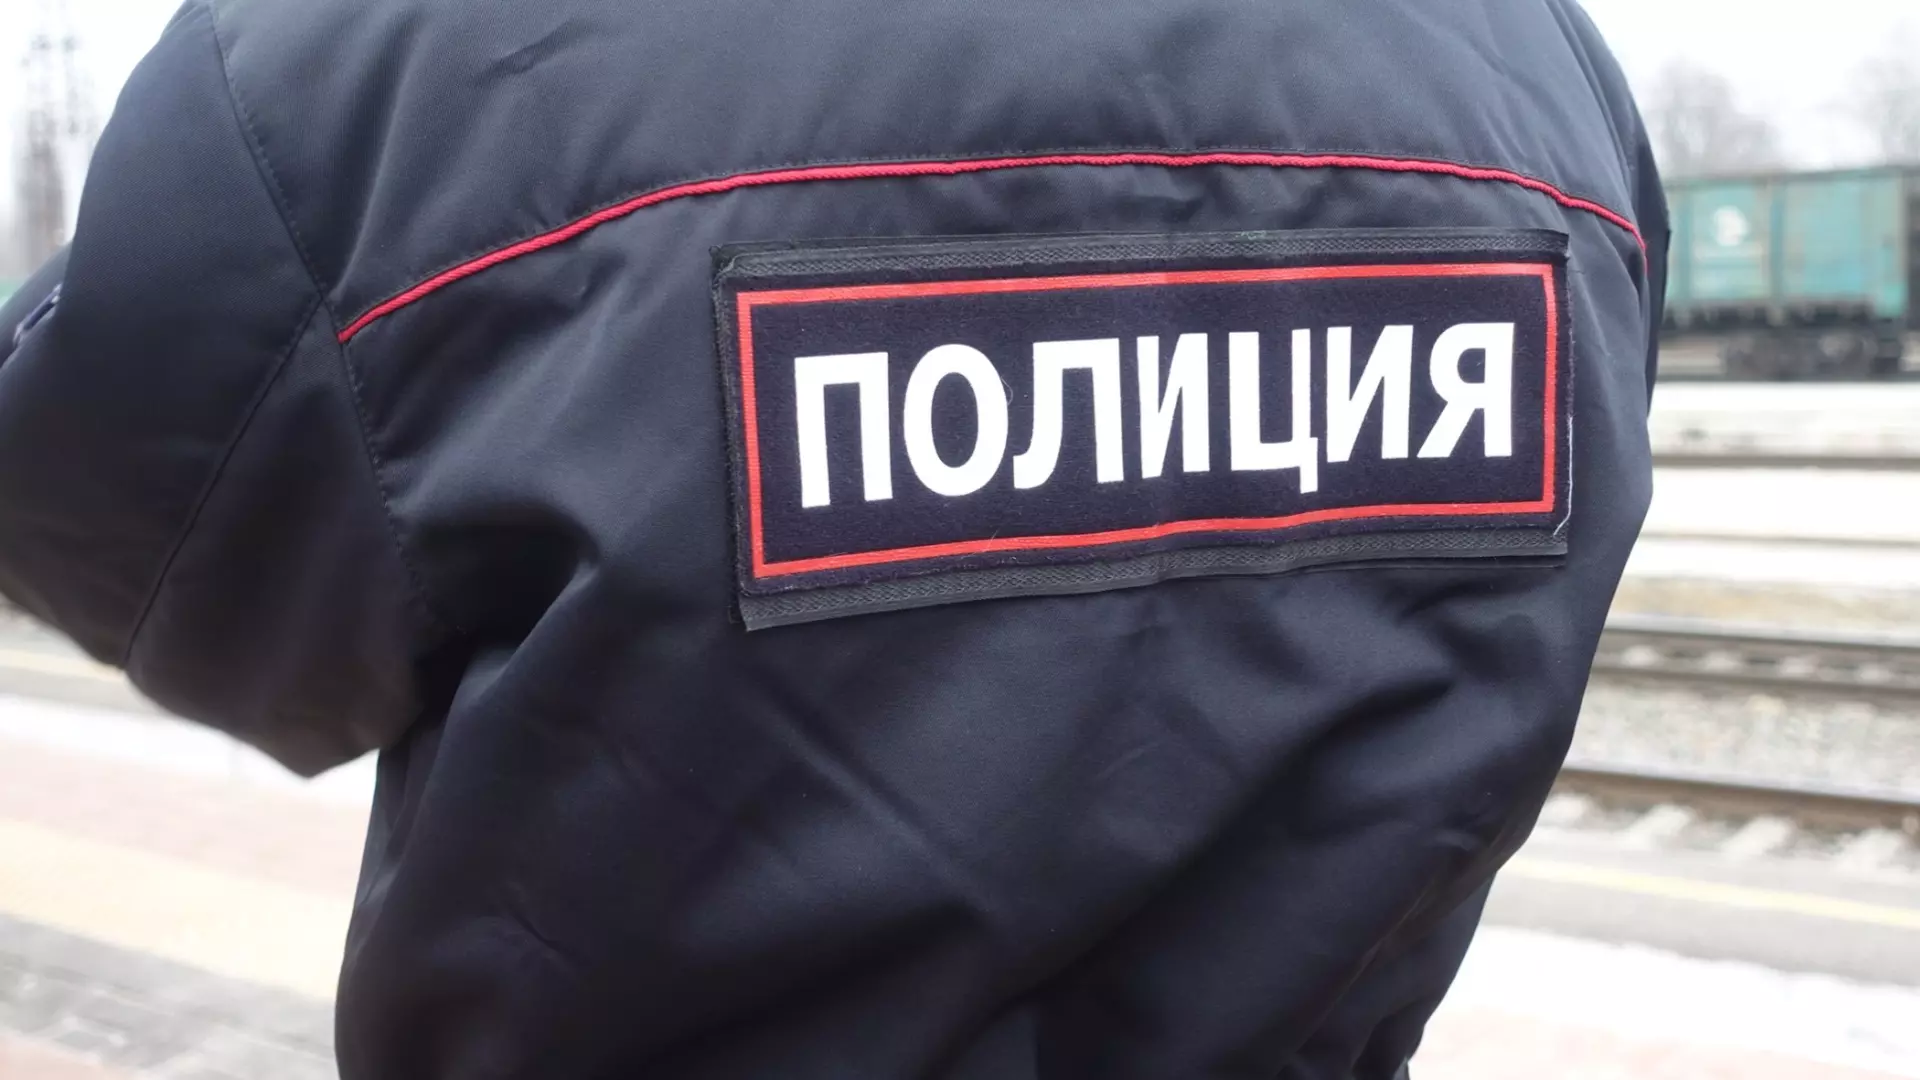 Найденный на улице Алексеевской подозрительный рюкзак был не опасен